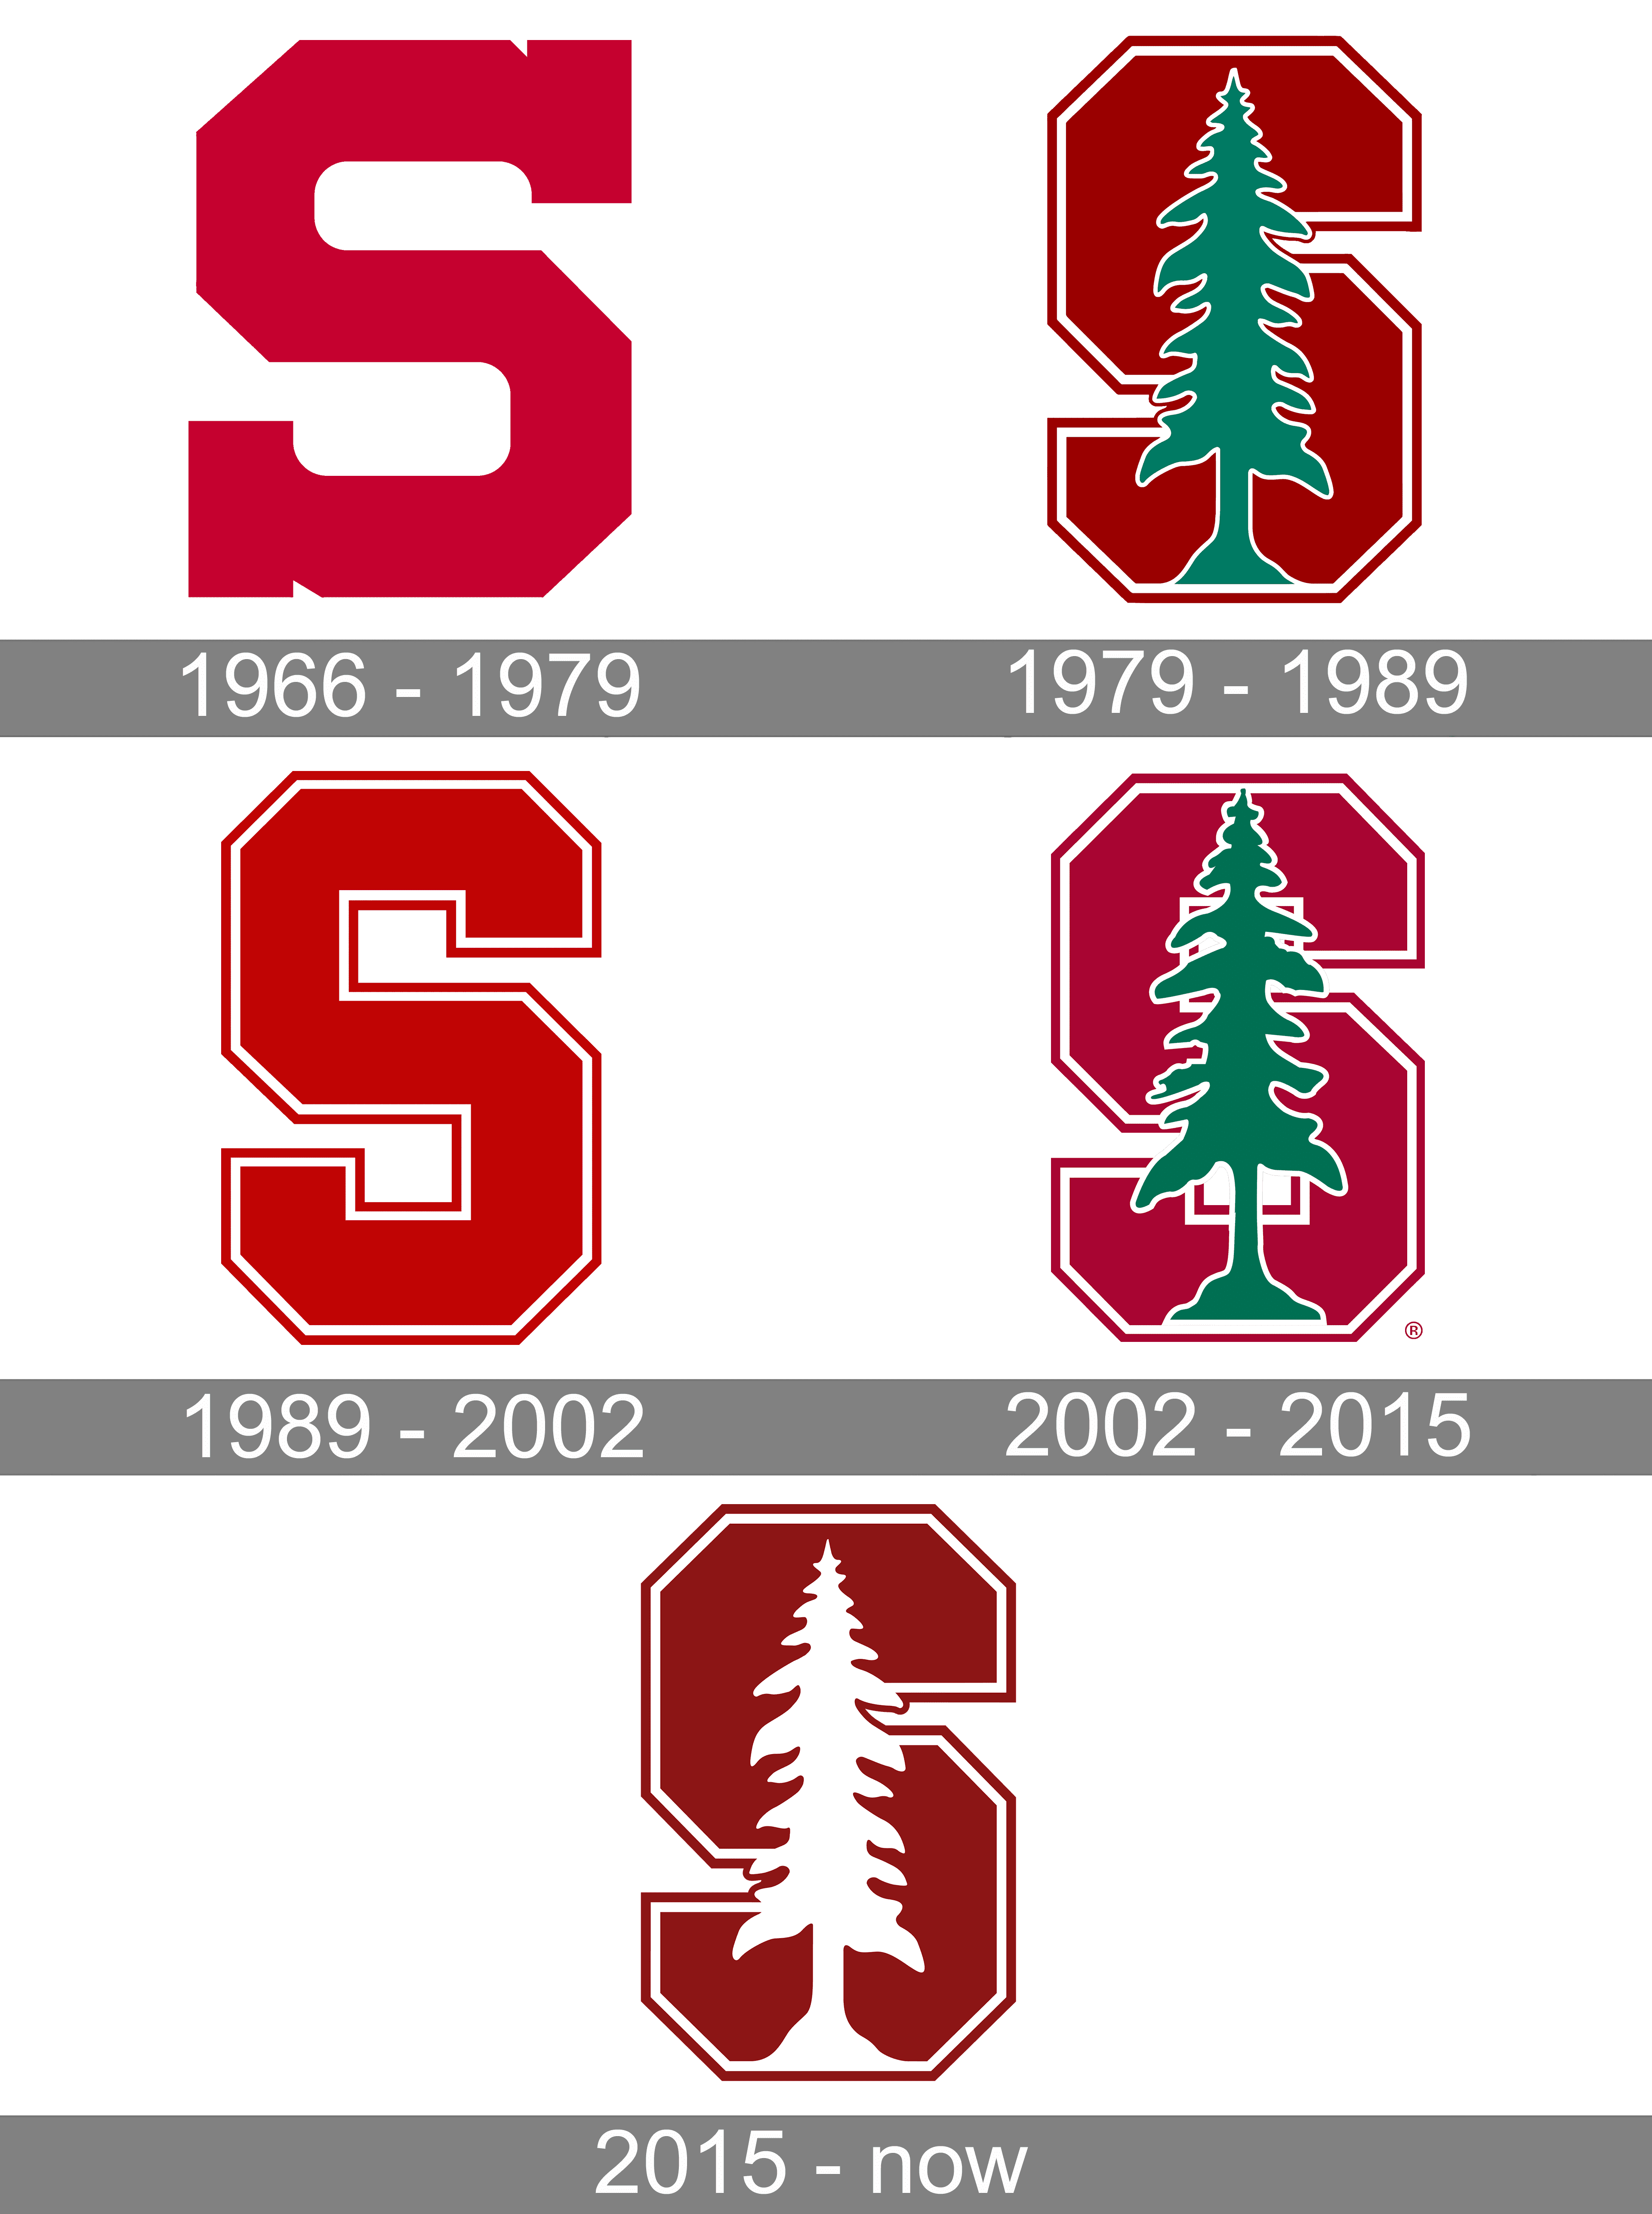 Baseball, football, and basketball logo evolutions